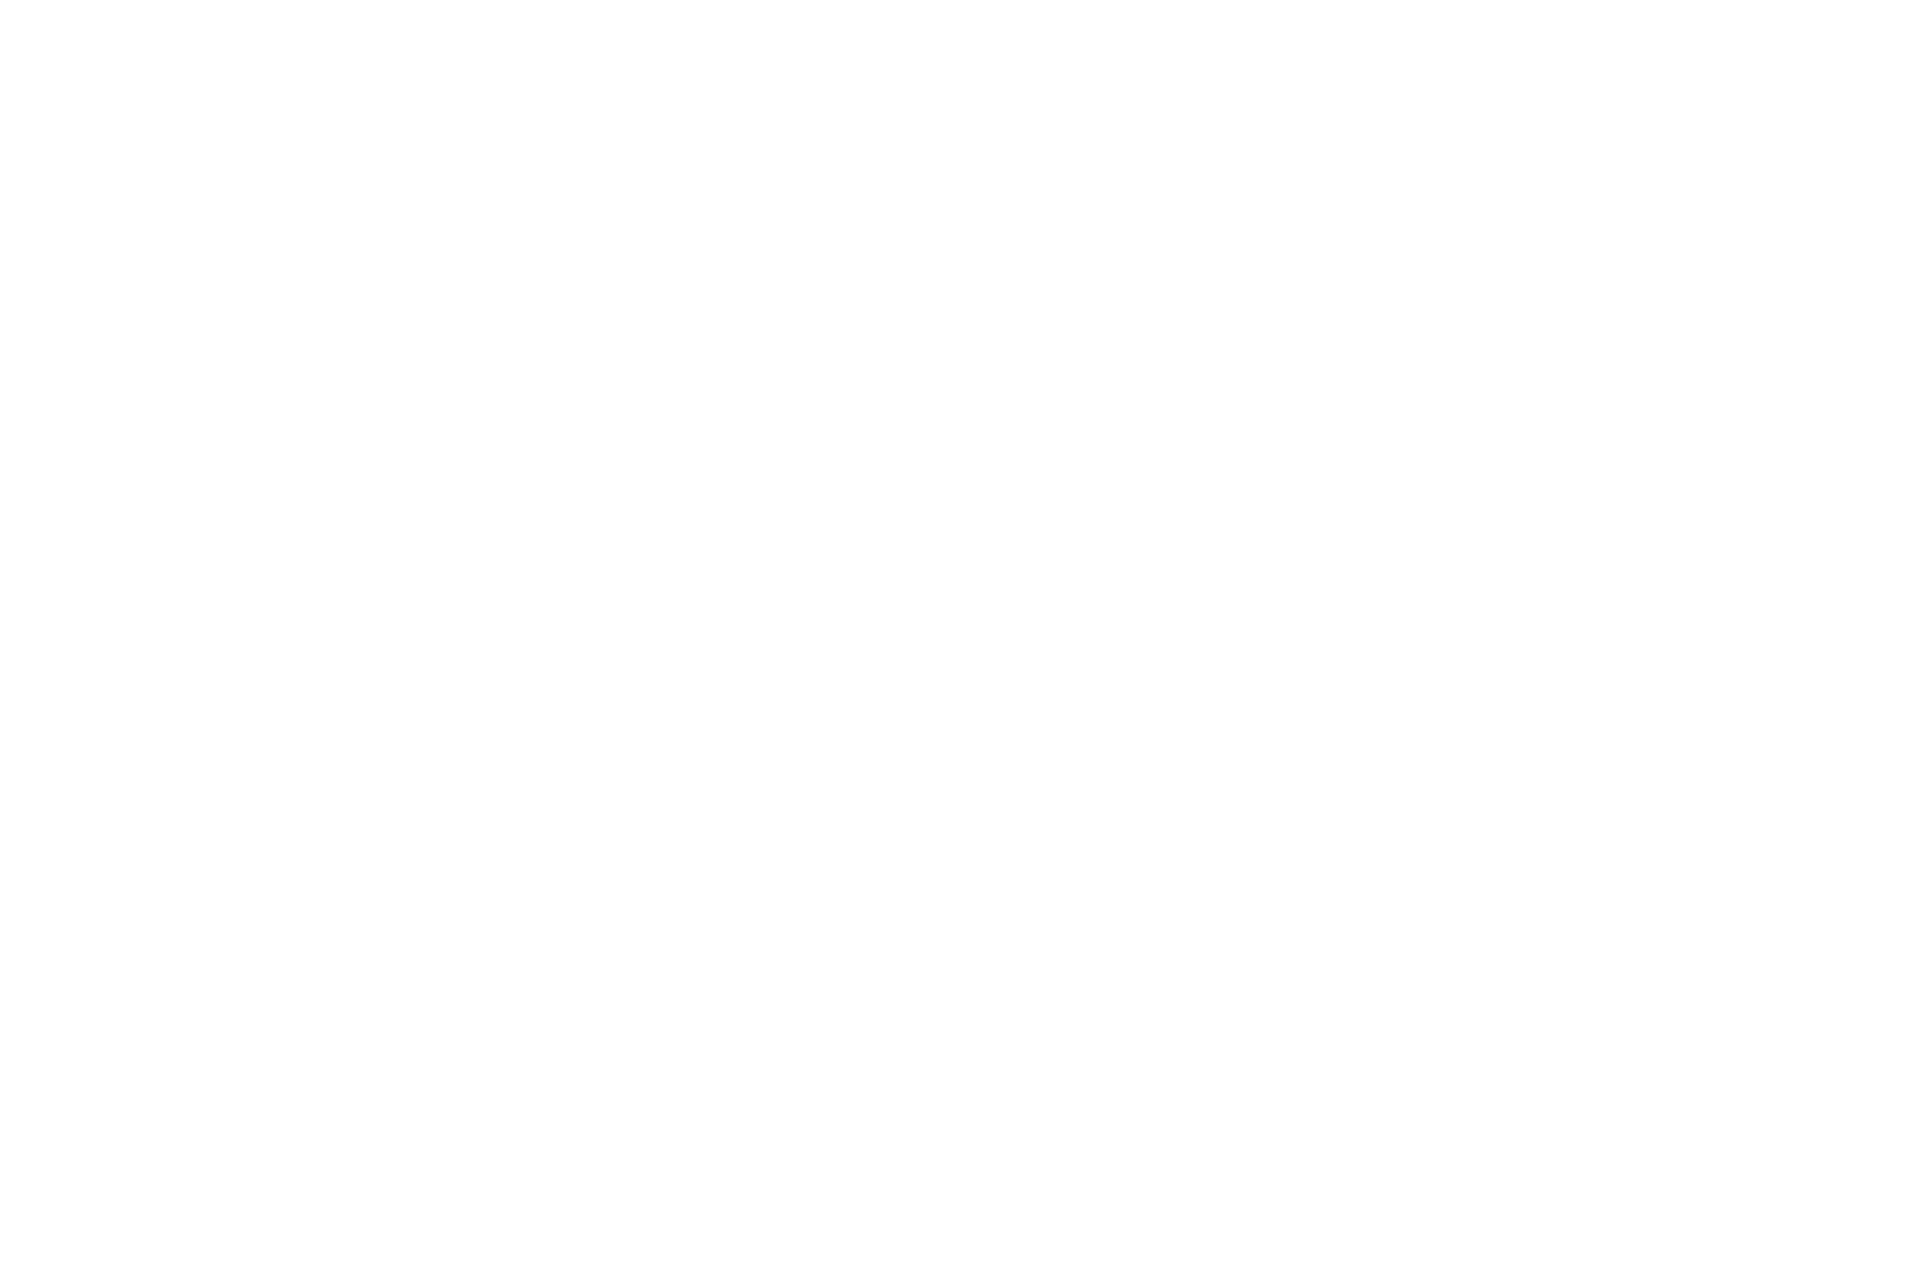 Tesla kopen met bitcoin Elon Musk